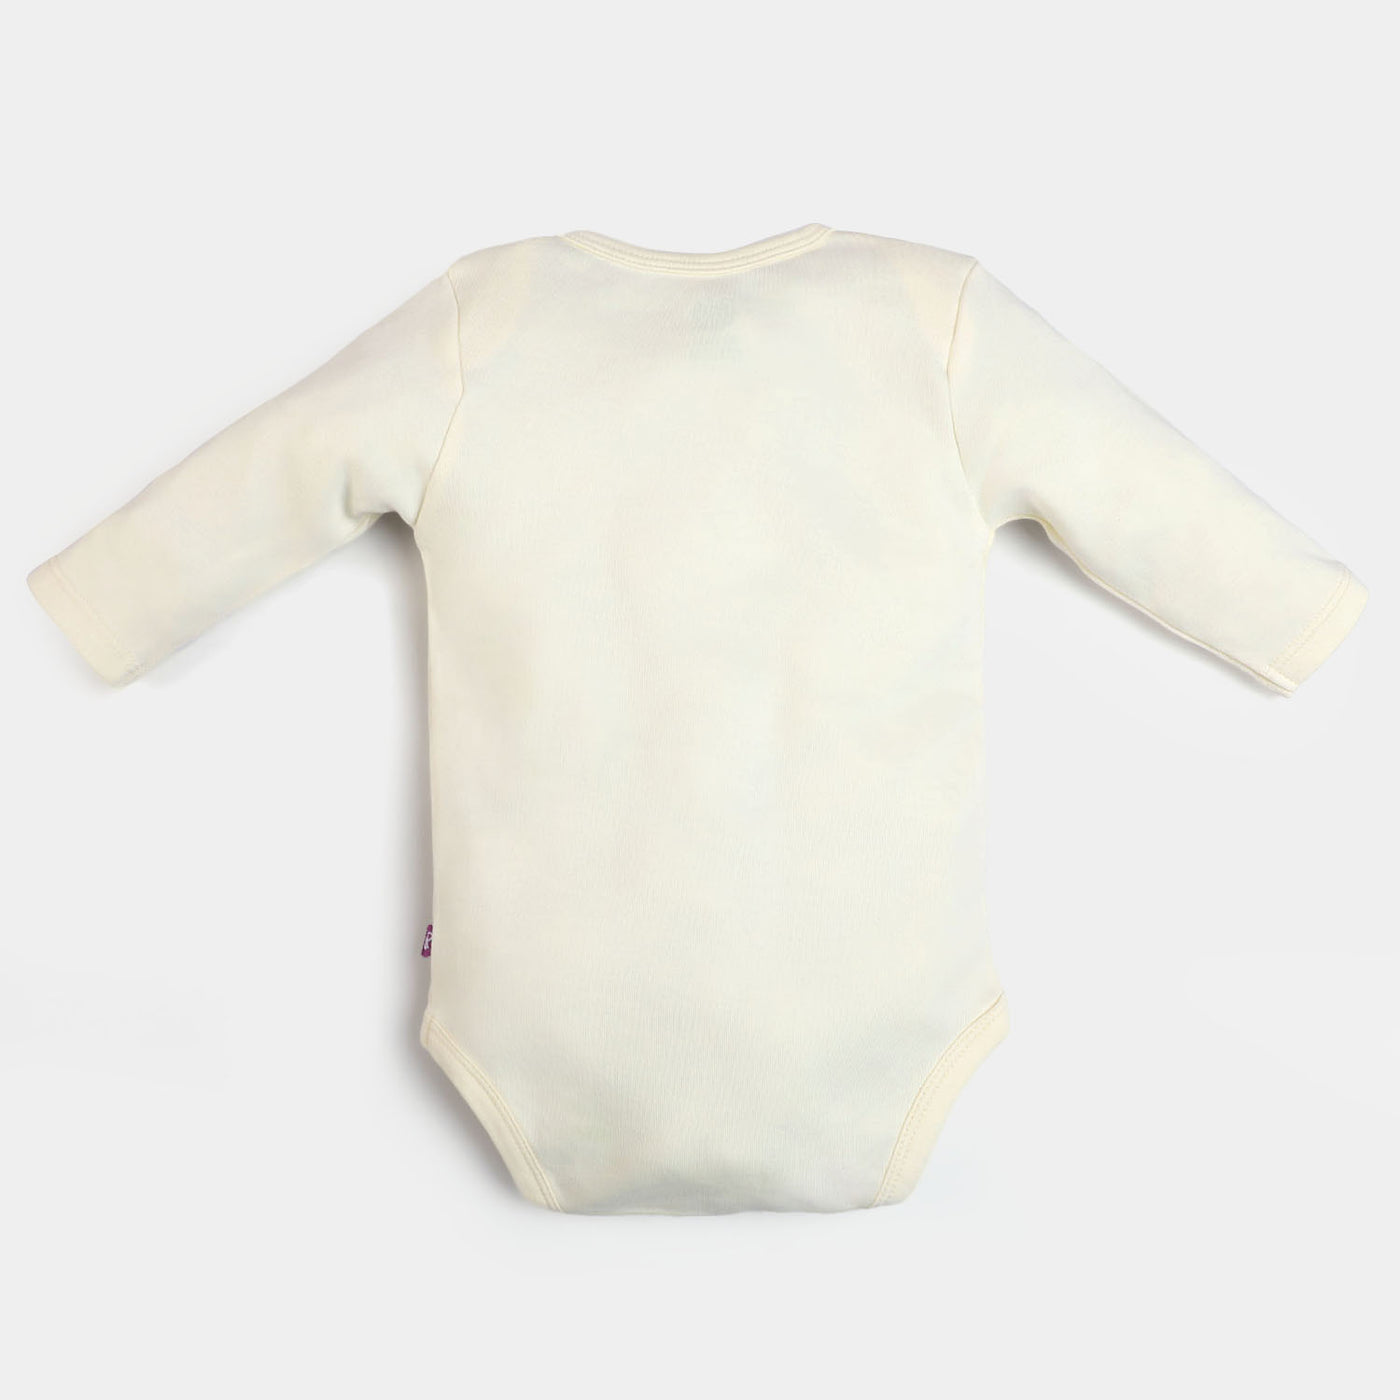 Infant Unisex Cotton Romper Cutest Phuppo - Cream